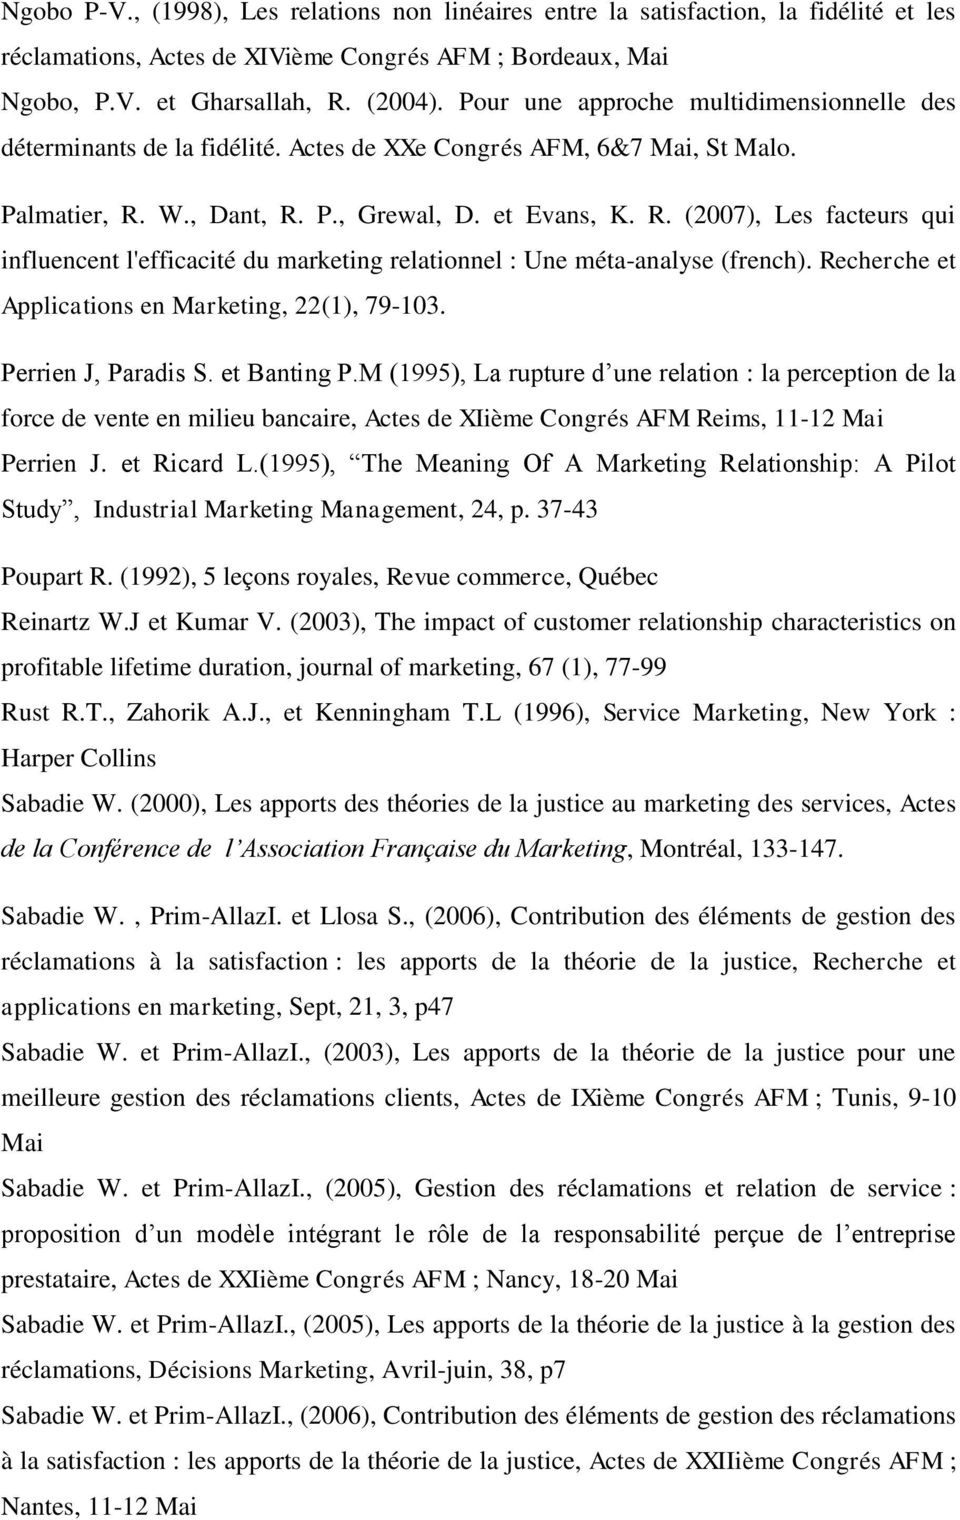 W., Dant, R. P., Grewal, D. et Evans, K. R. (2007), Les facteurs qui influencent l'efficacité du marketing relationnel : Une méta-analyse (french).